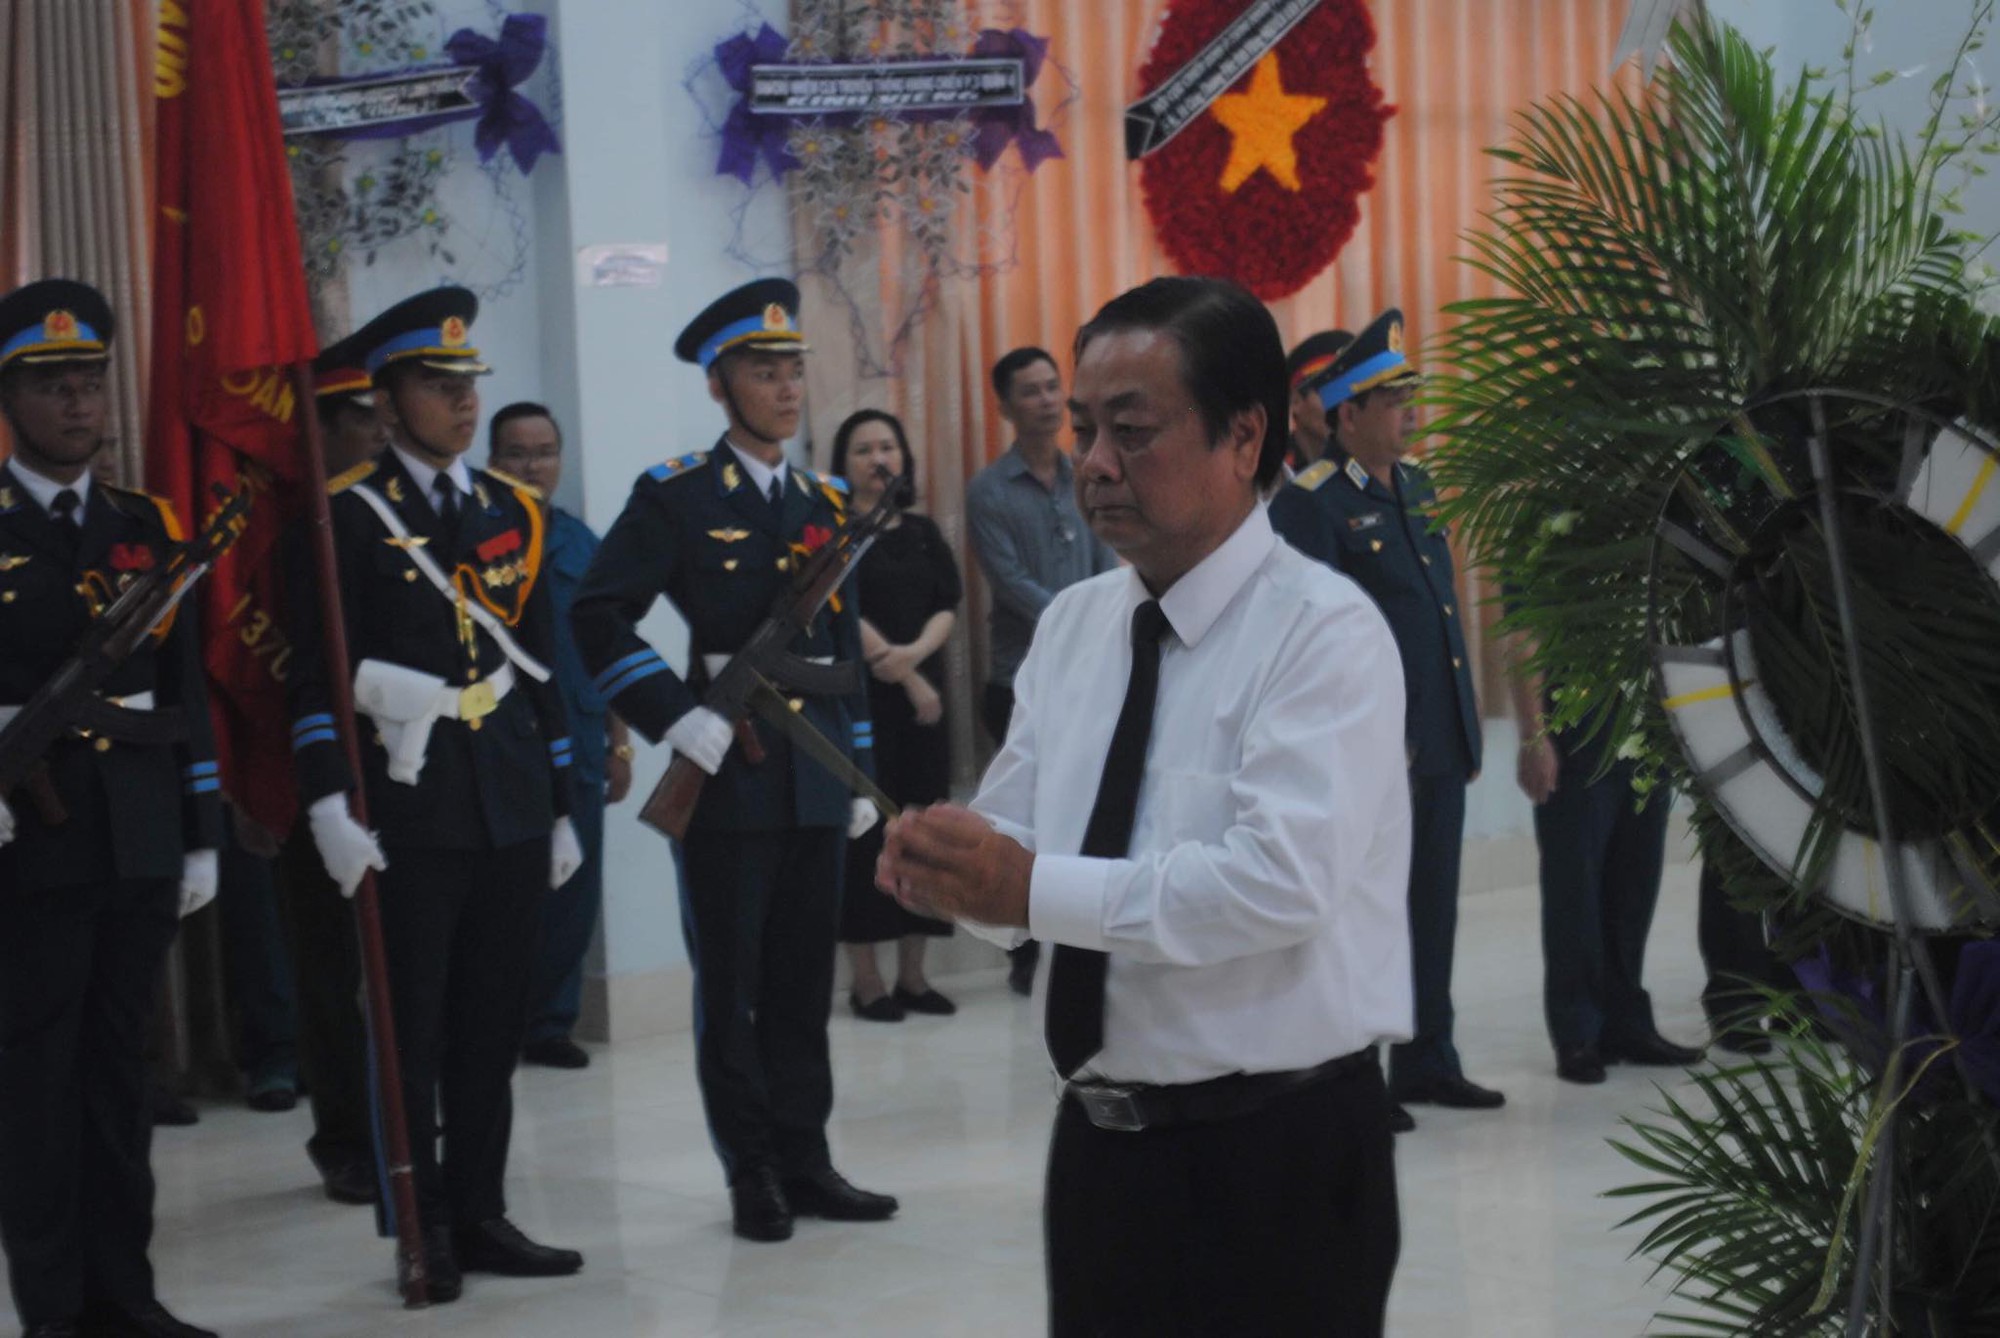 Lễ viếng Đại tá phi công Nguyễn Văn Bảy đang diễn ra tại quê nhà - Ảnh 2.